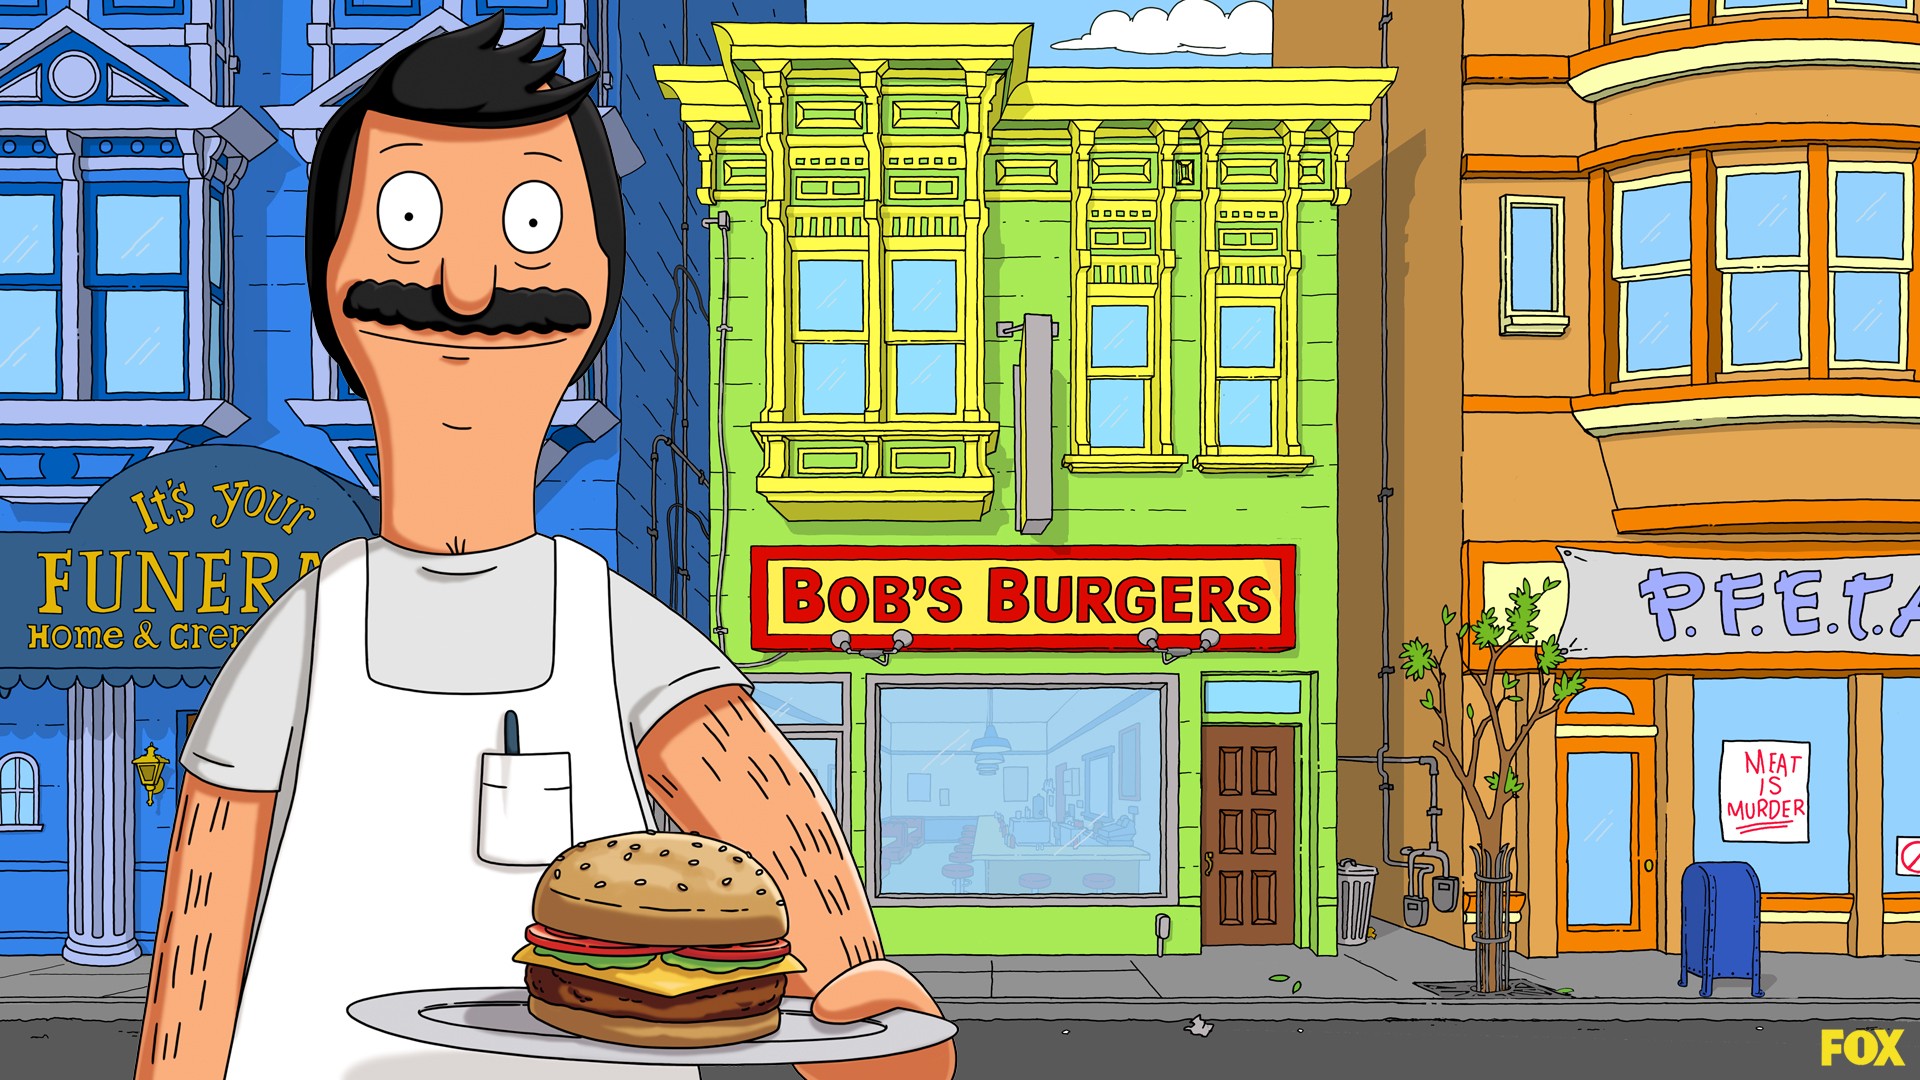 hamburgers, Bob's Burgers, TV shows, Bob Belcher - desktop wallpaper